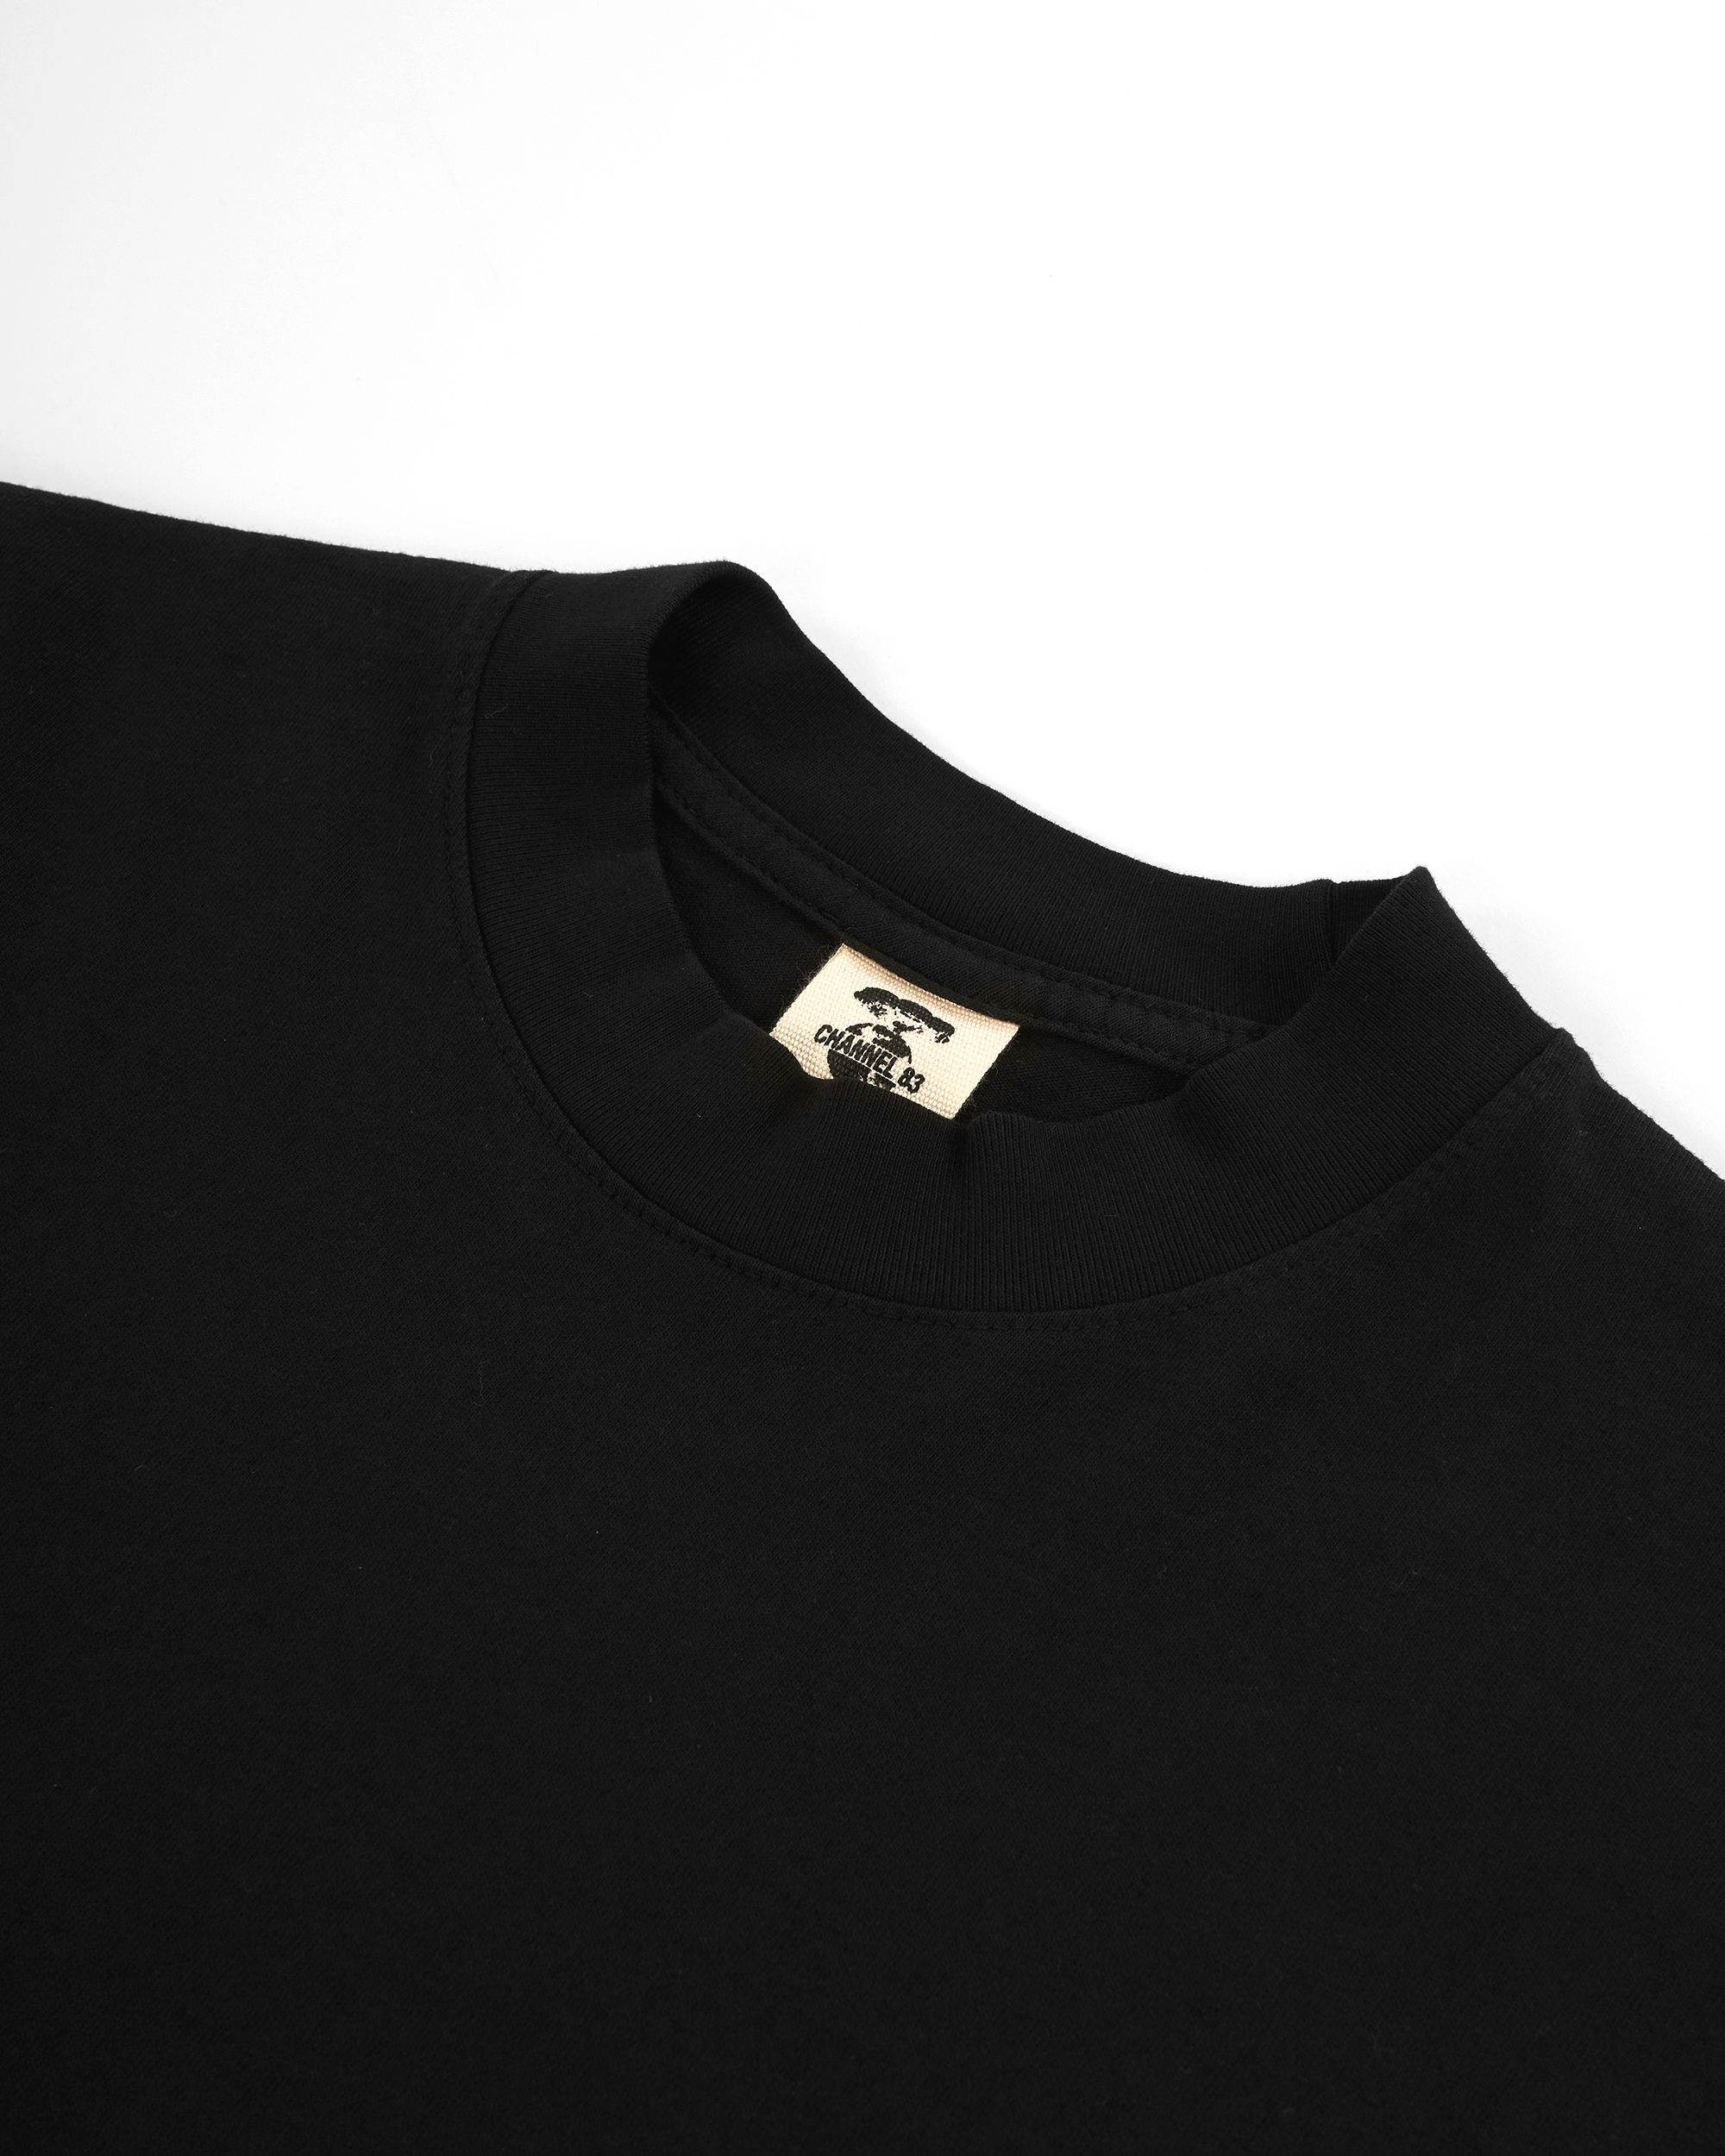 Primitive Cable T-shirt - Black